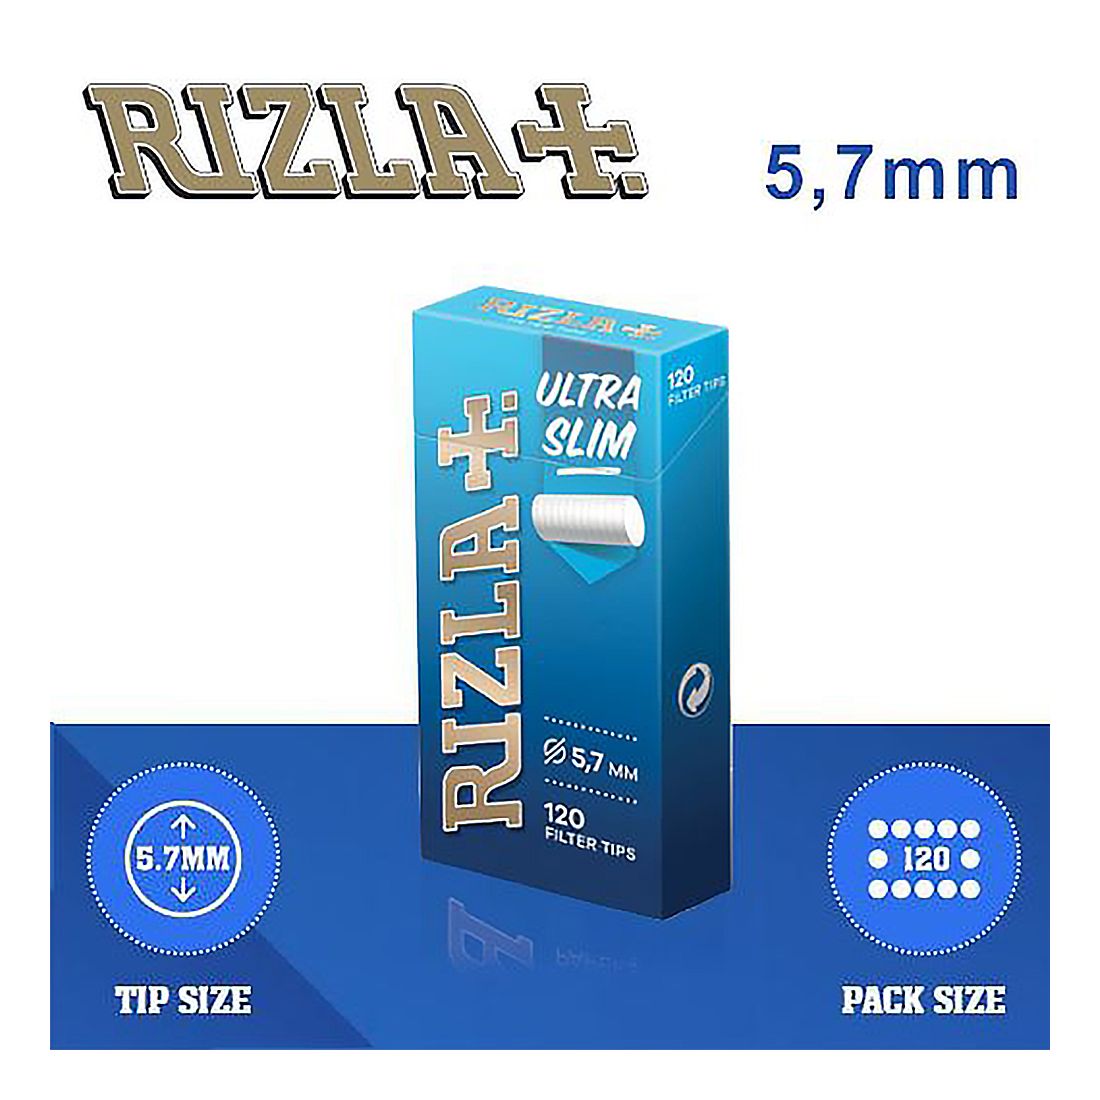 Rizla Ultra Slim Filter Tips 20S